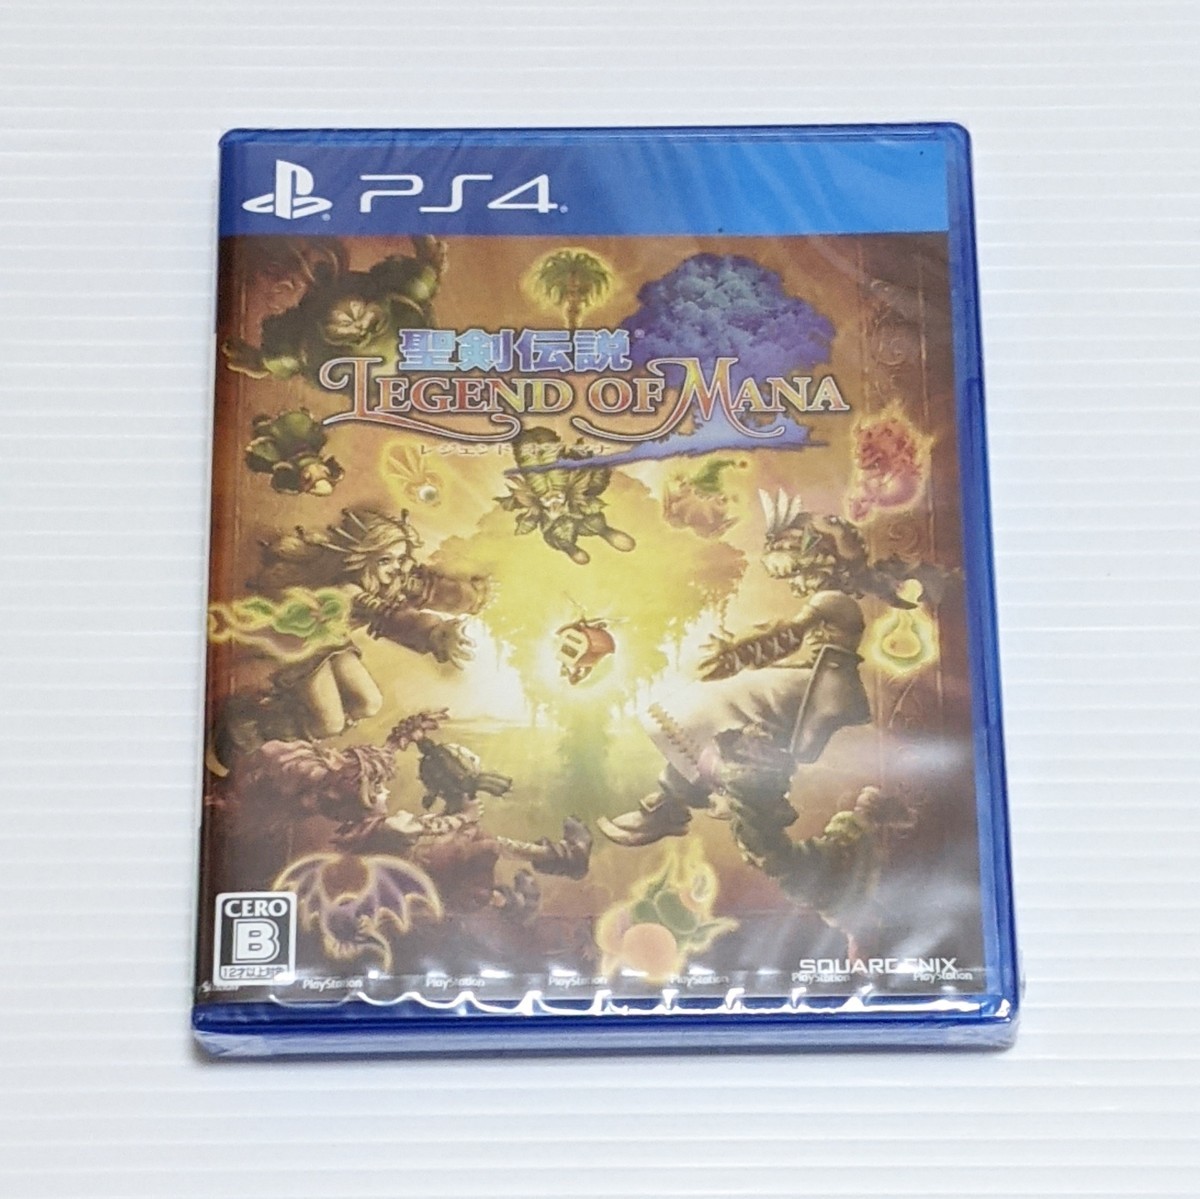 パッケージ版 PS4ゲームソフト 聖剣伝説 レジェンド オブ マナ HDリマスター版 コレクターズエディション限定生産品